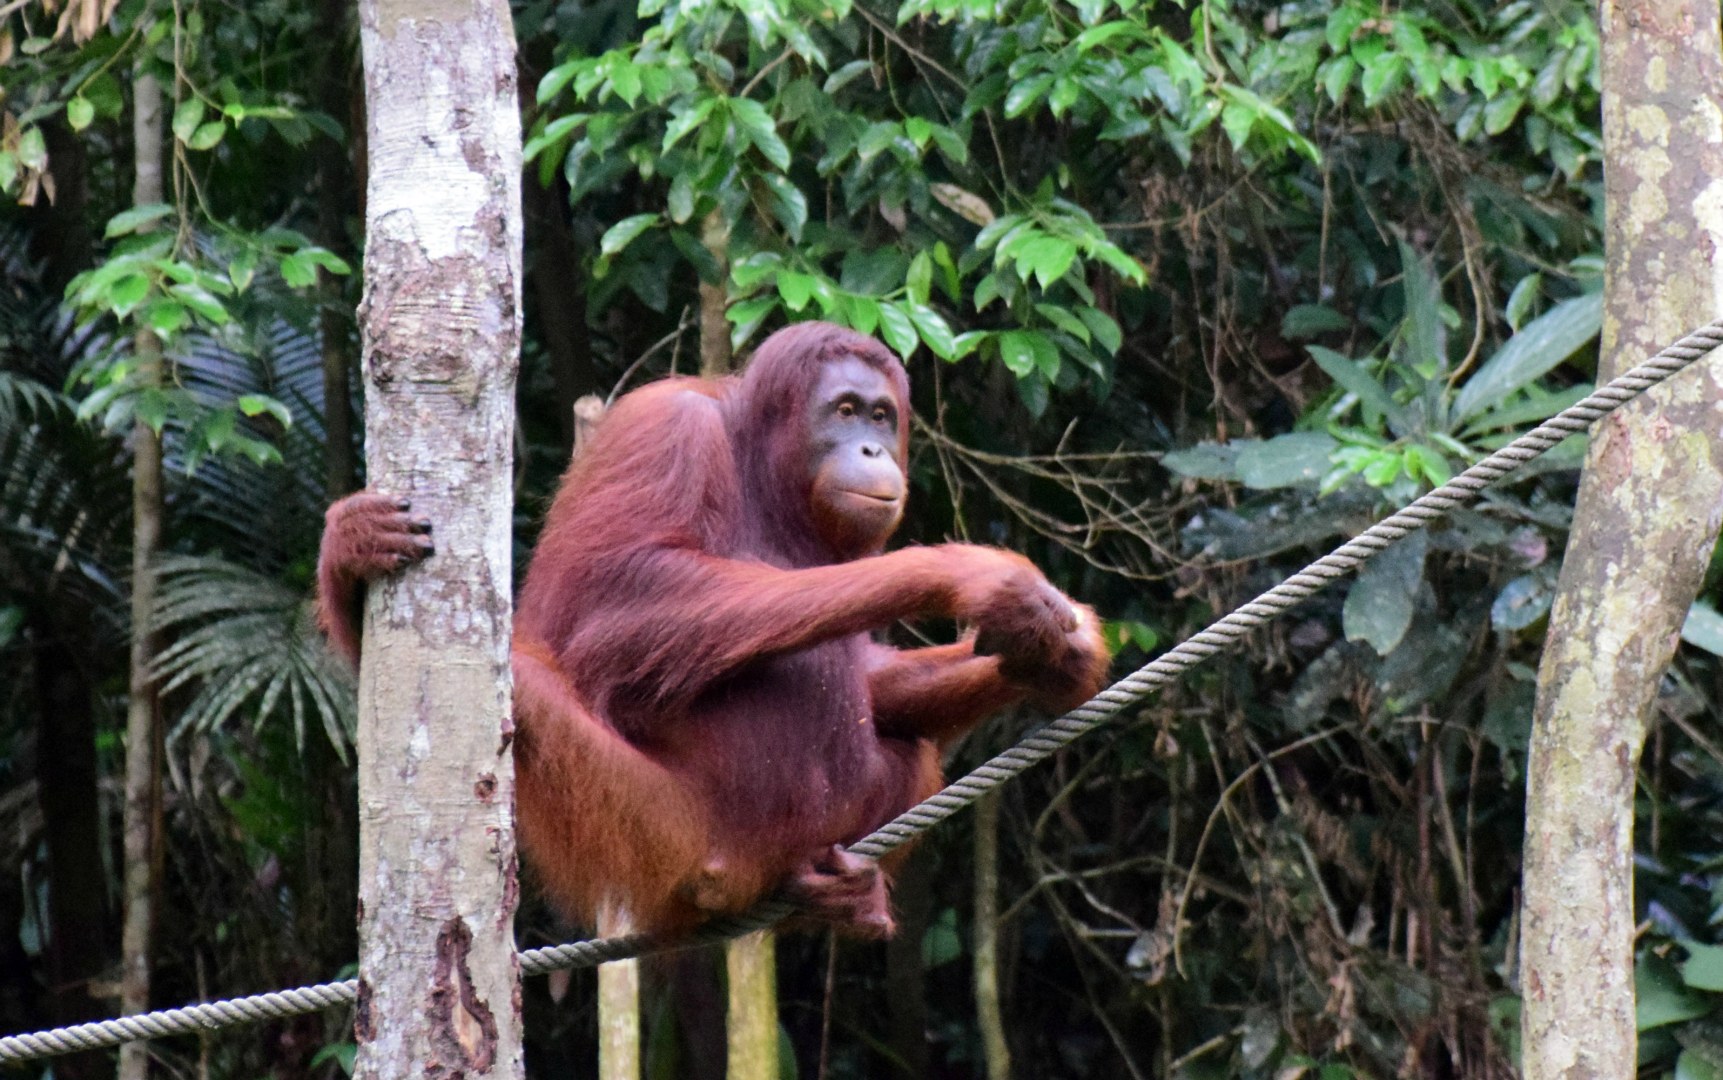 Orangutan, Semenggoh Wildlife Rehabilitation Centre